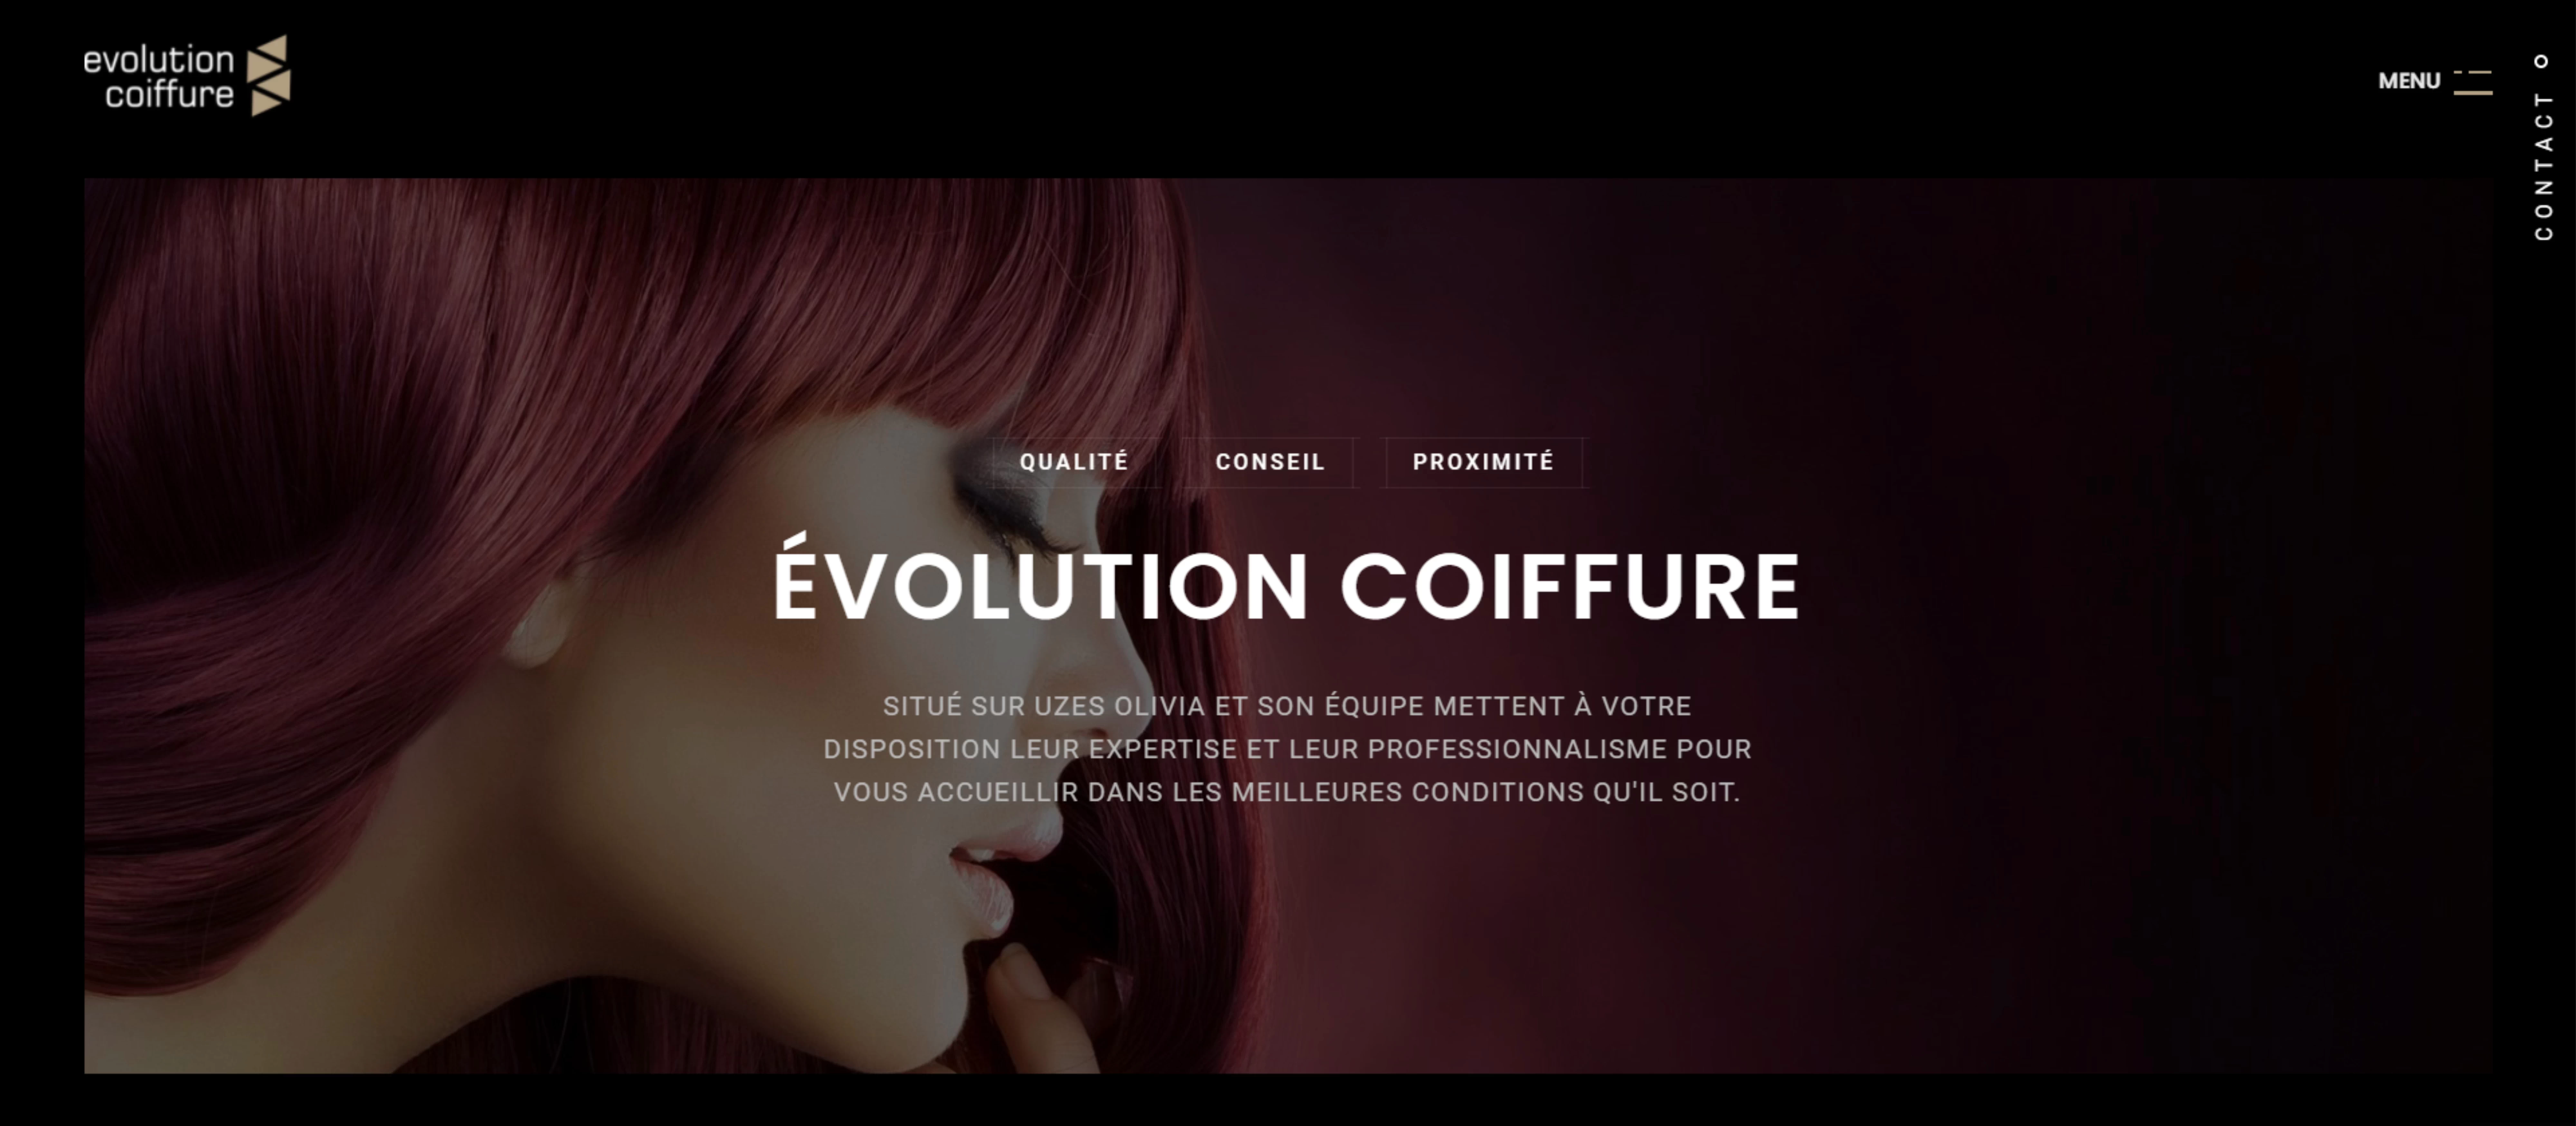 site internet evolution coiffure uzès